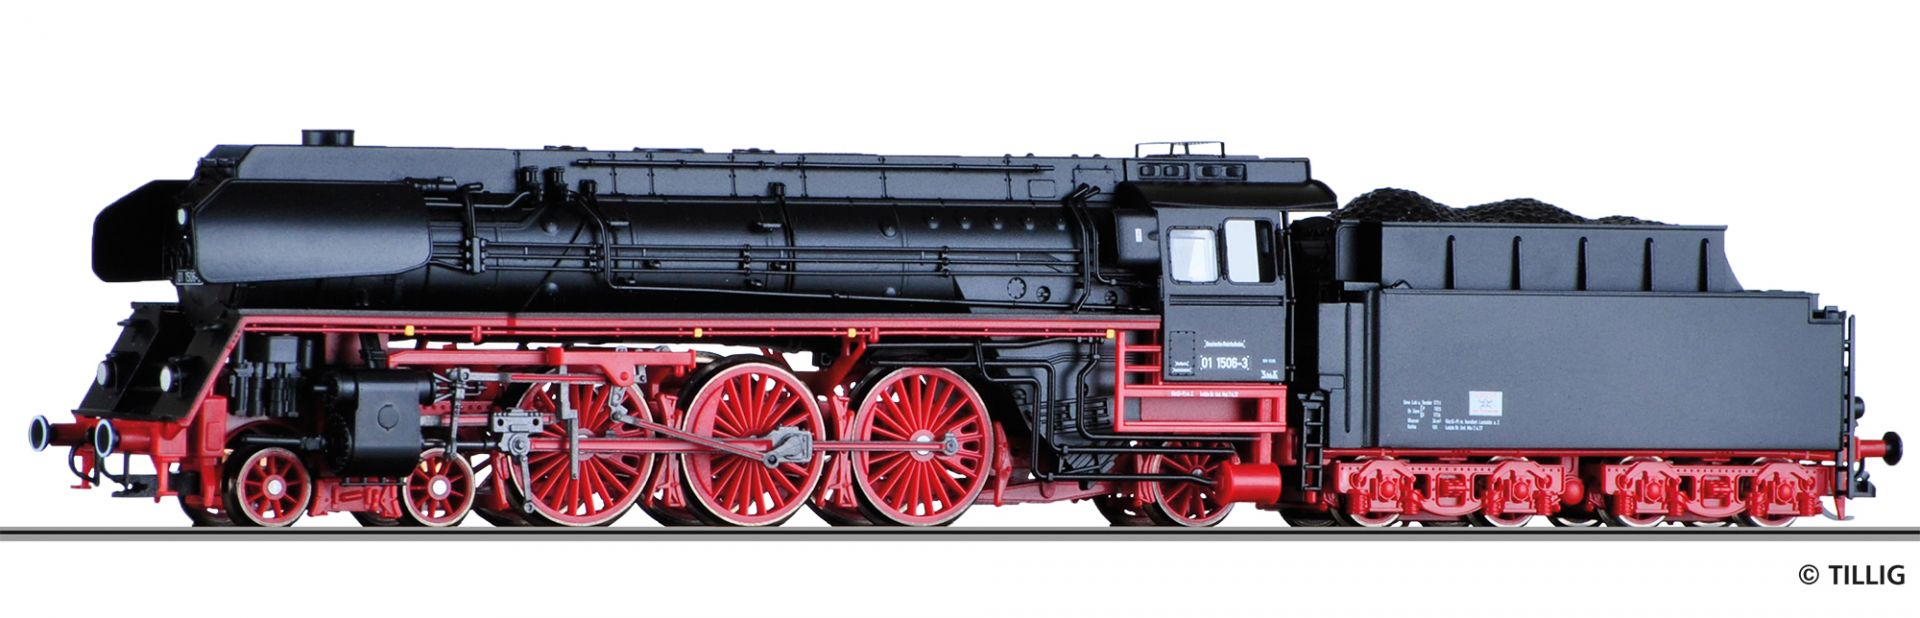 02007 | Damplflokomotive DR -werksseitig ausverkauft-